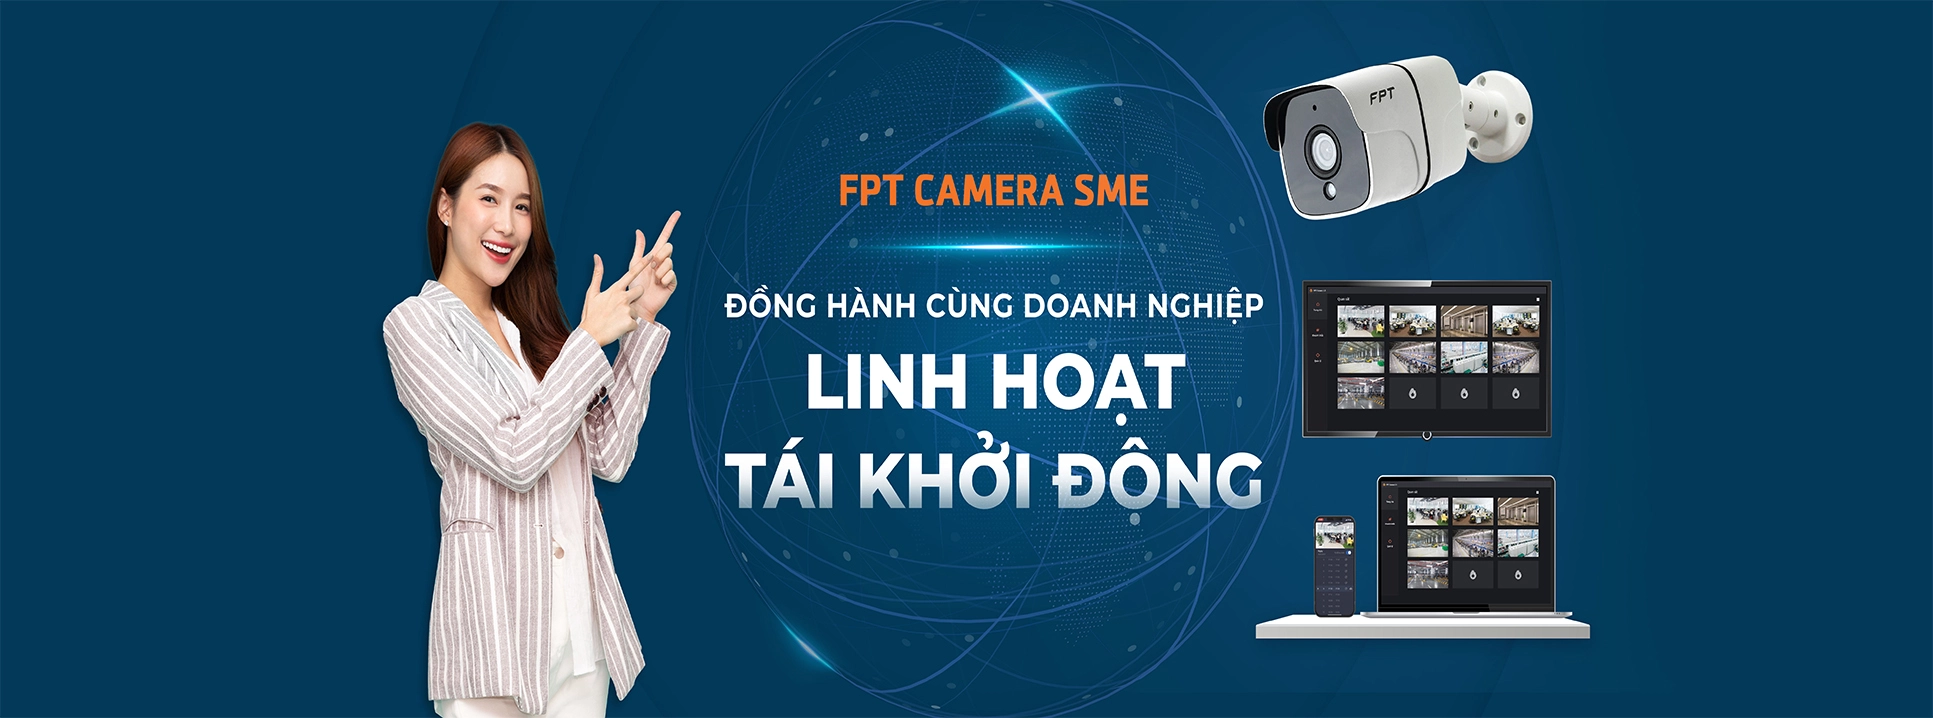 https://fpttelecom.net.vn/san-pham-dich-vu/smart-home/fpt-camera